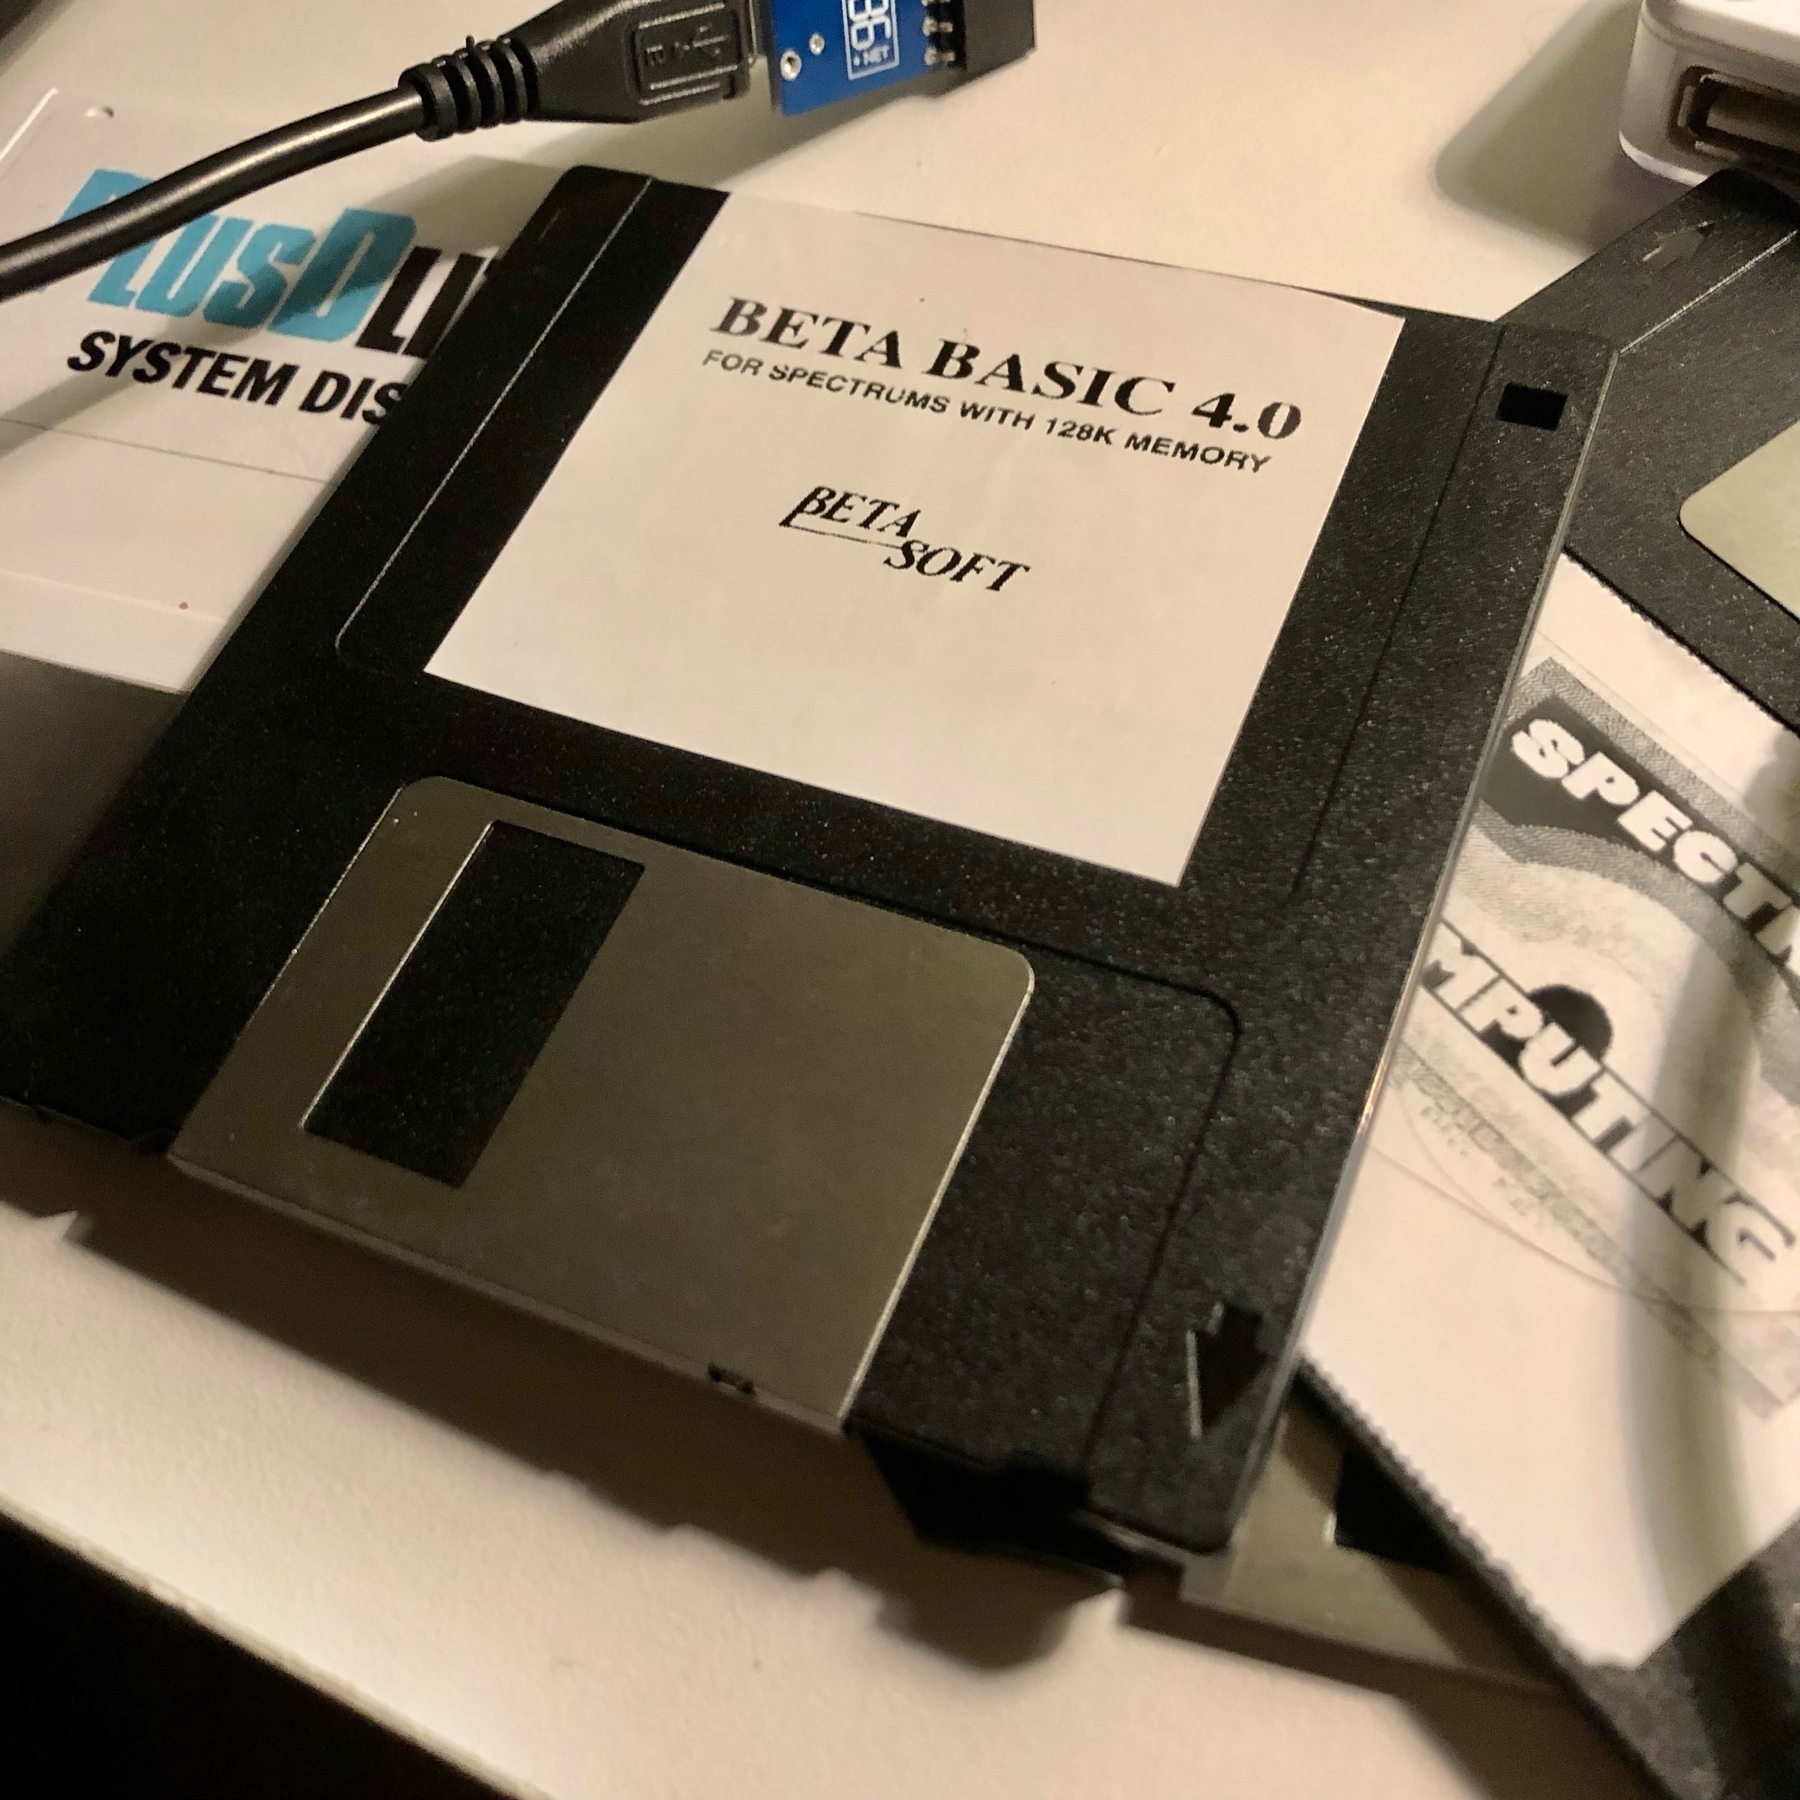 Black 3.5" floppy disk labelled Beta Basic 4.0 by Beta Soft